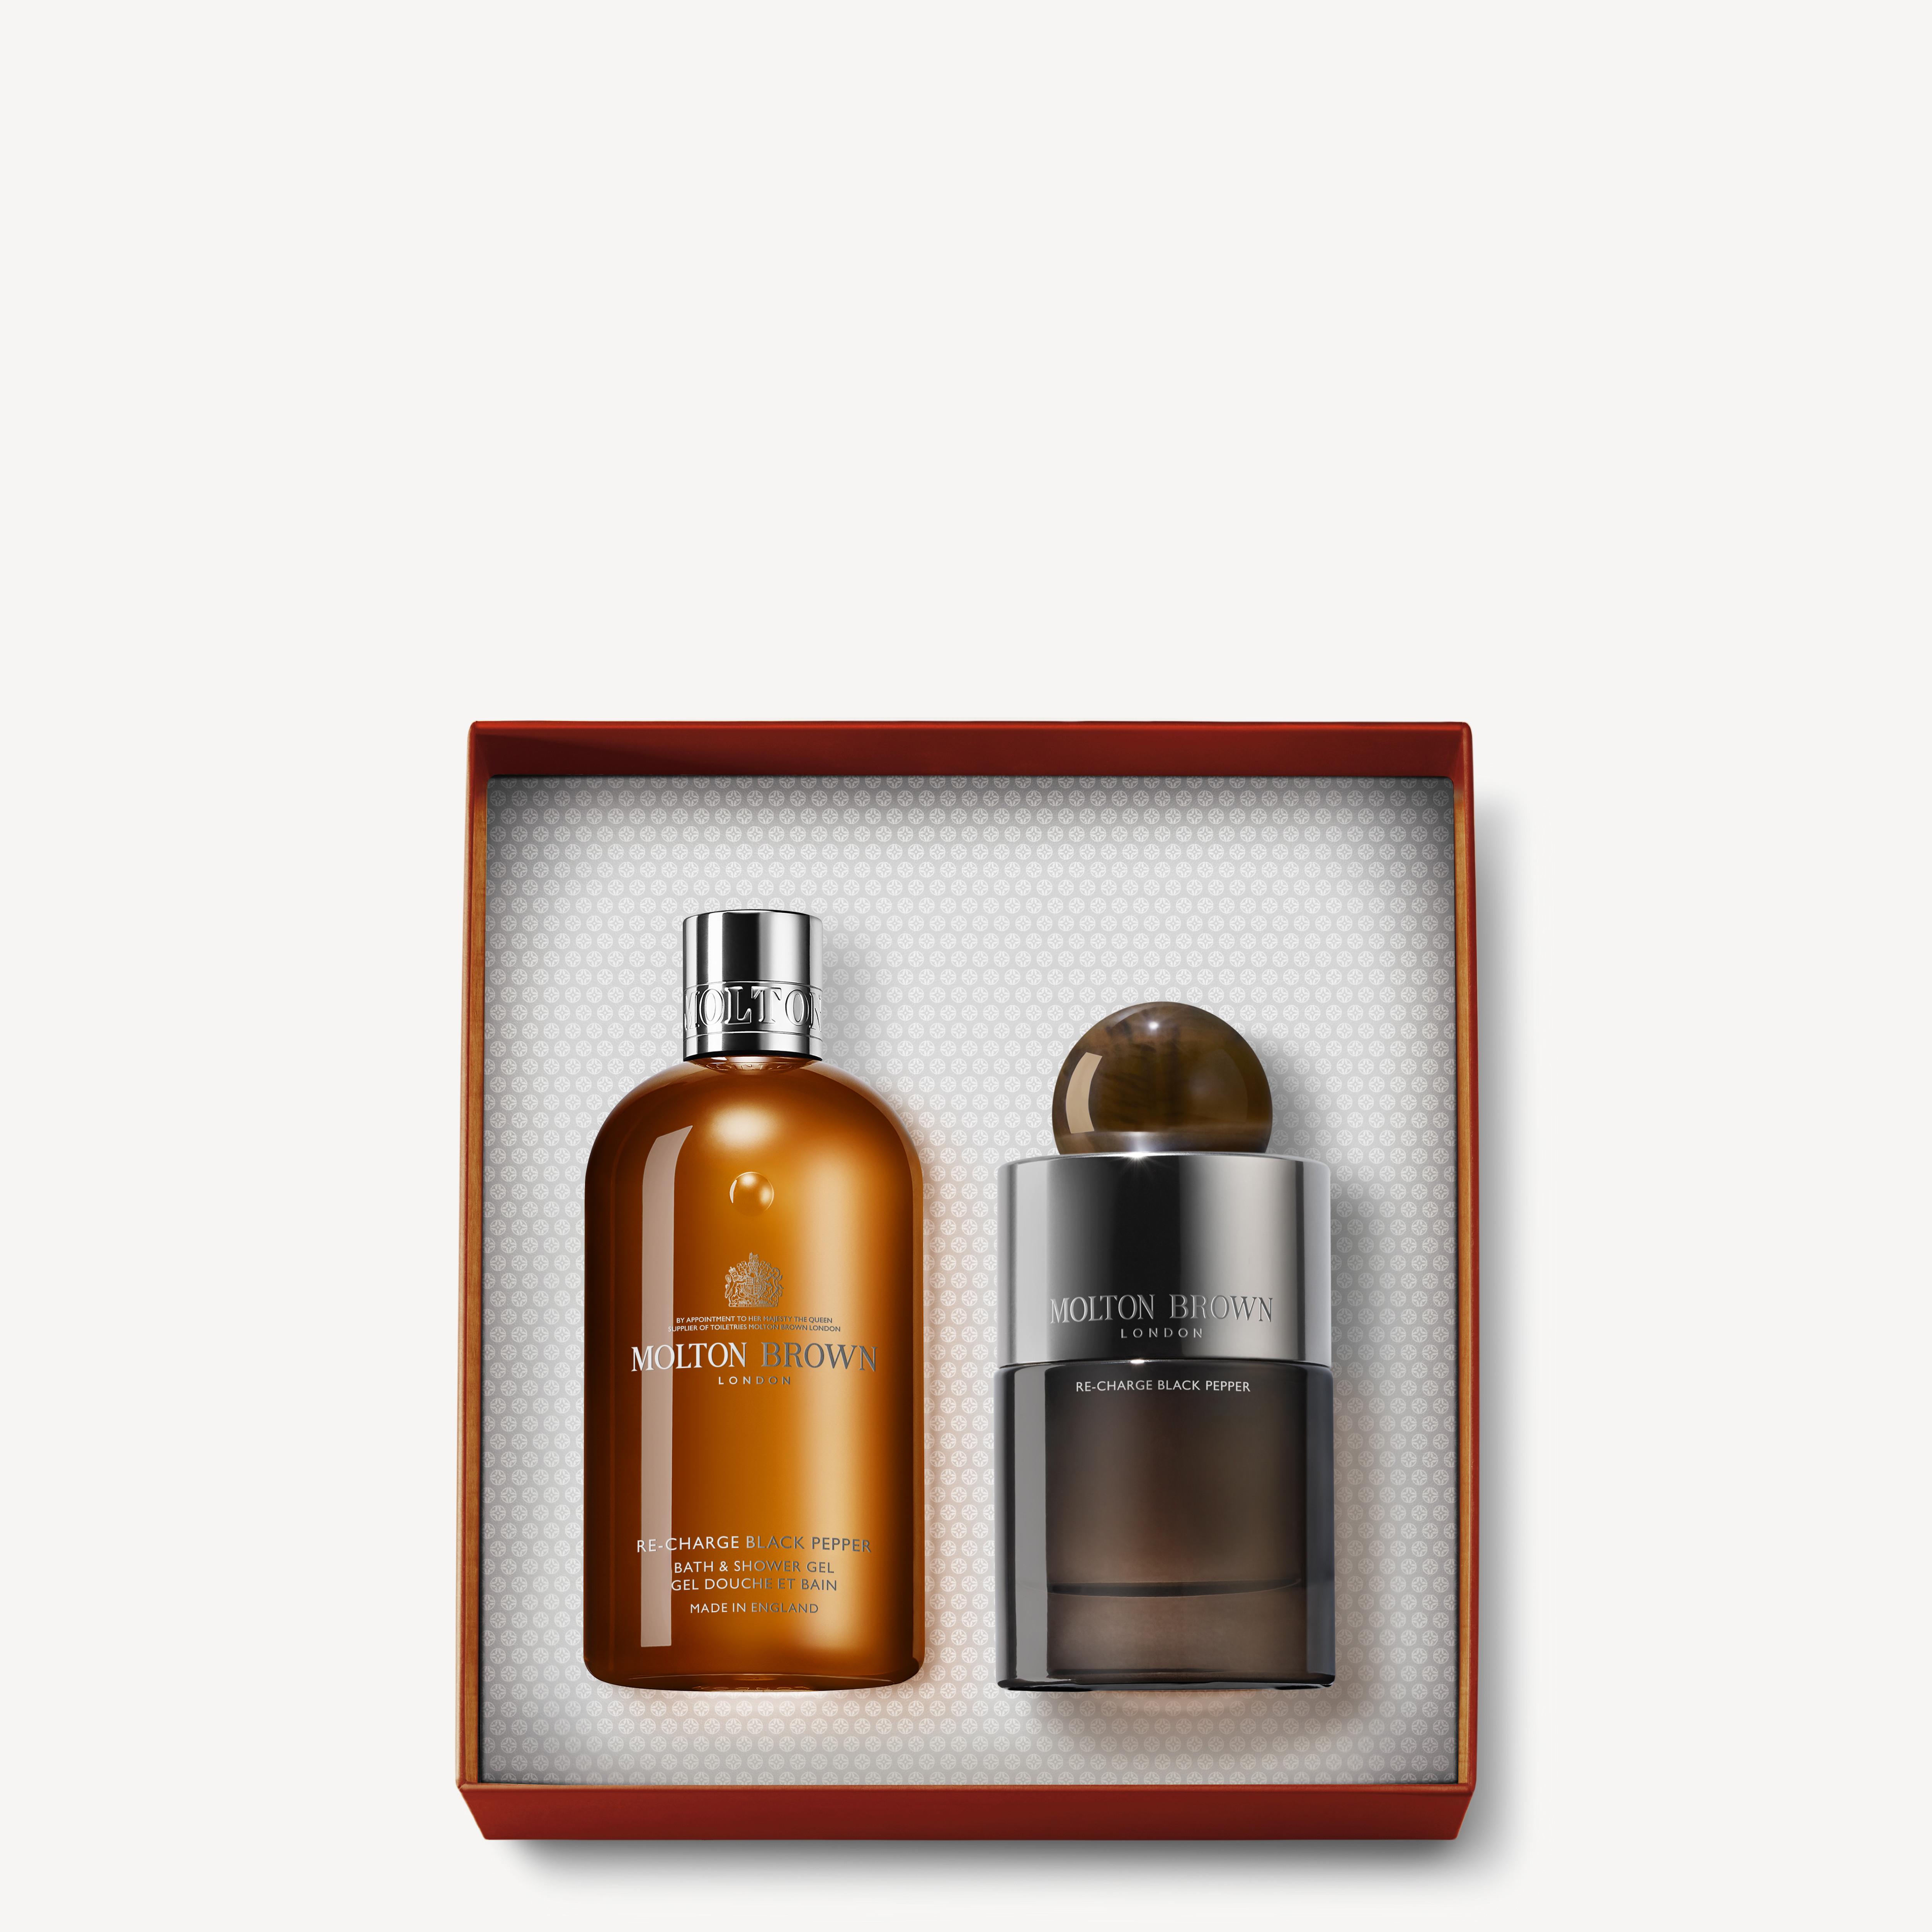 Molton Brown Re-charge Black Pepper Eau de Parfum Duo Gift Set